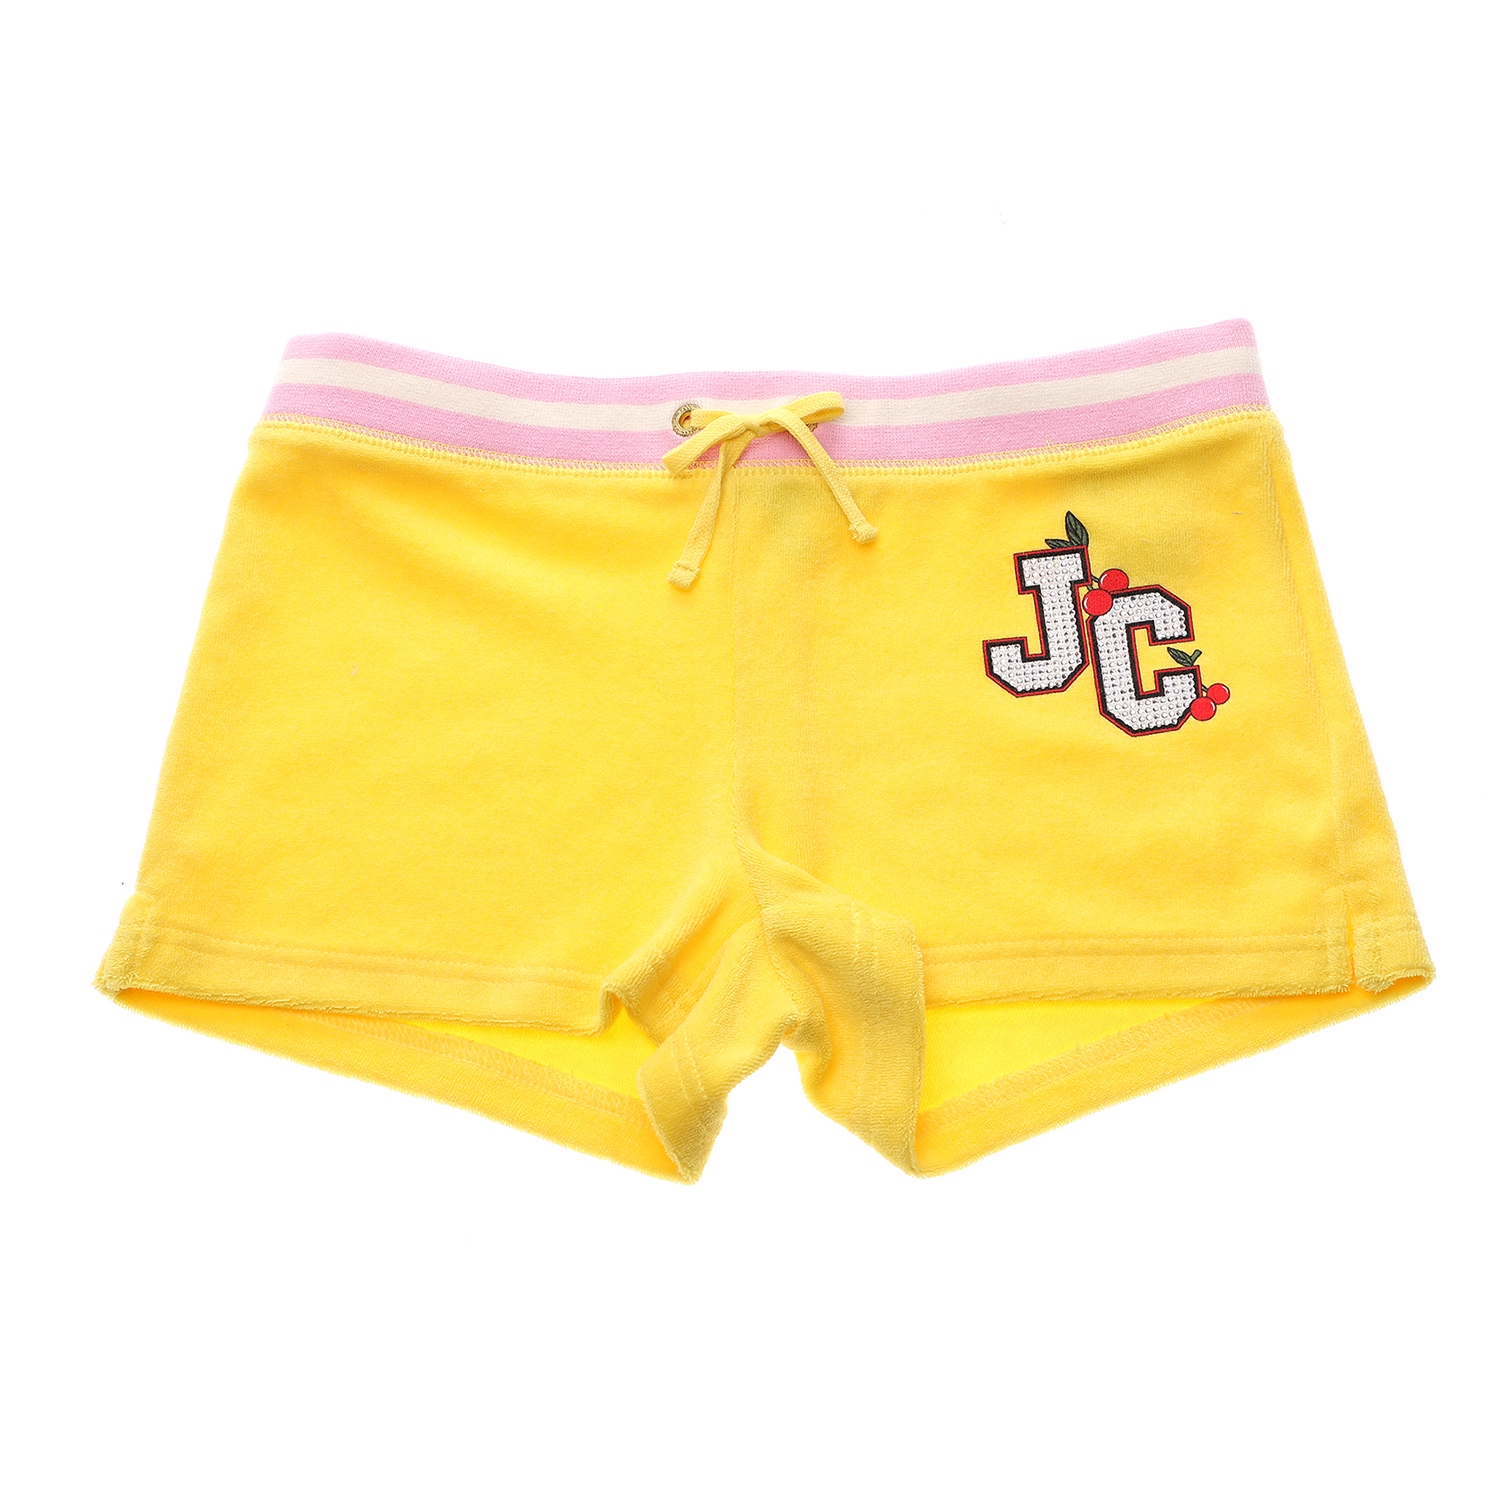 Παιδικά/Girls/Ρούχα/Σορτς-Βερμούδες JUICY COUTURE KIDS - Παιδικό σορτς για κορίτσια JUICY COUTURE KIDS CHERRY GROVE MICROTERRY κίτρινο